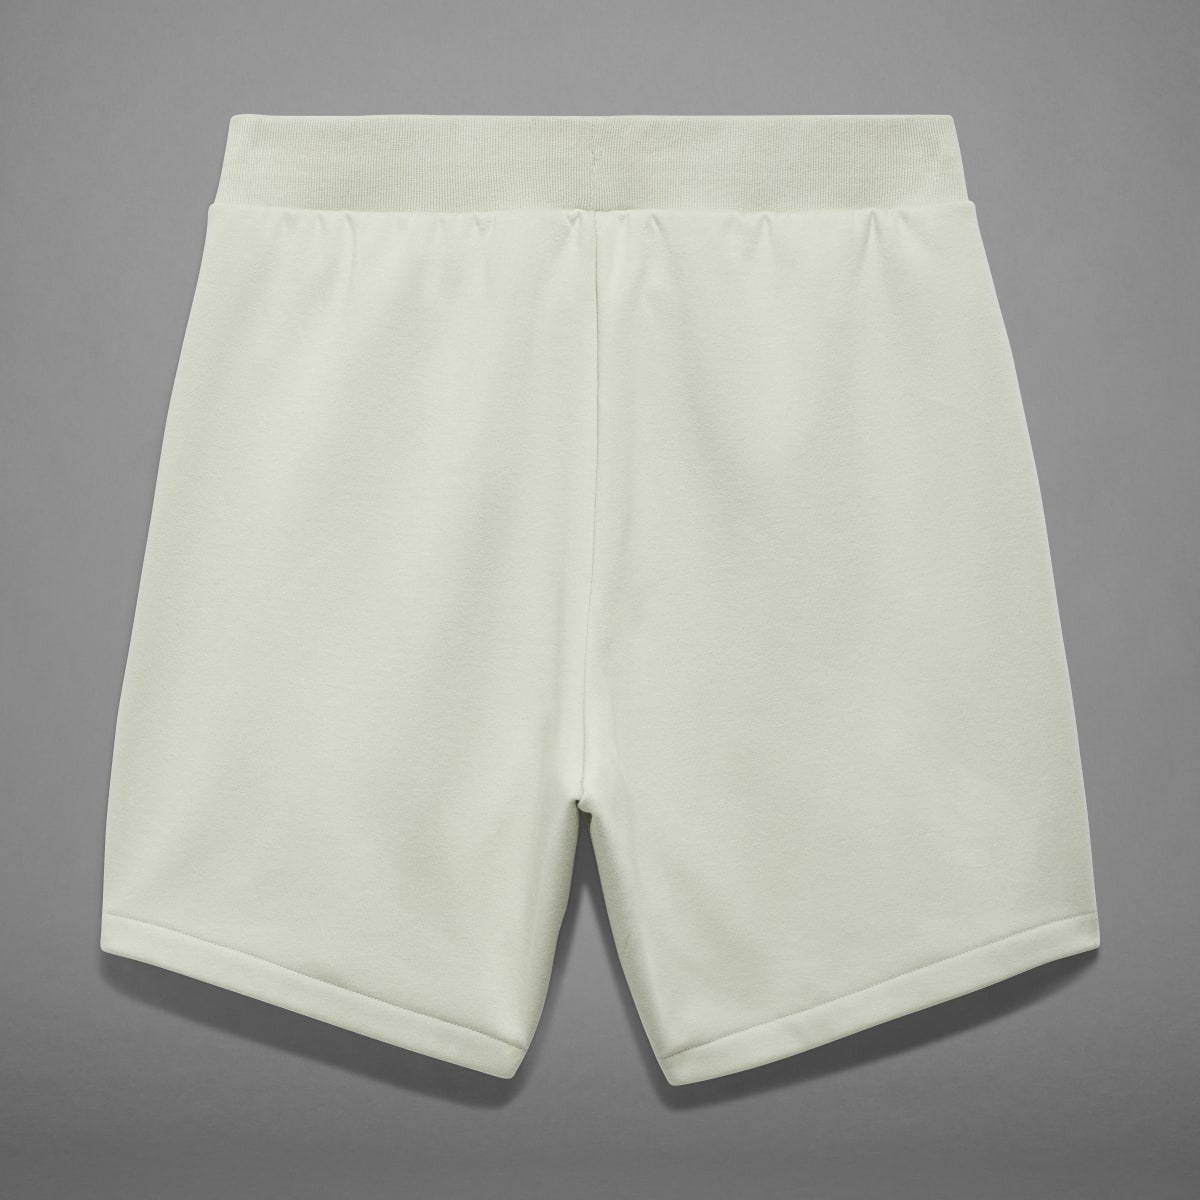 Adidas Shorts de Básquet adidas. 11